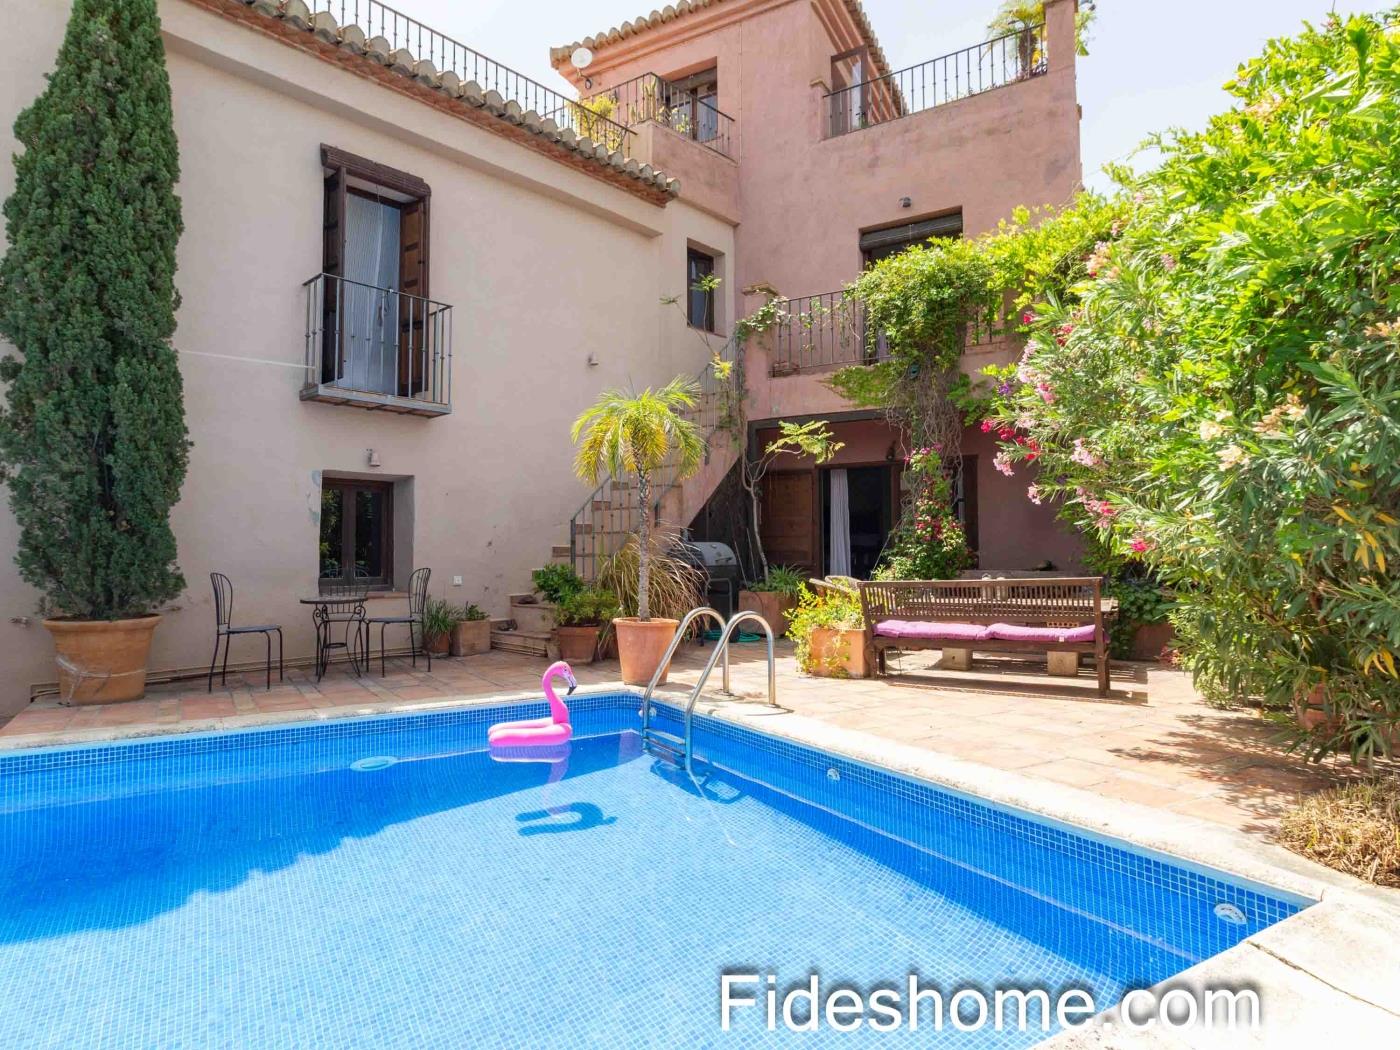 Gran casa de pueblo con piscina, patio/jardín, terrazas y calefacción central en Pinos del Valle